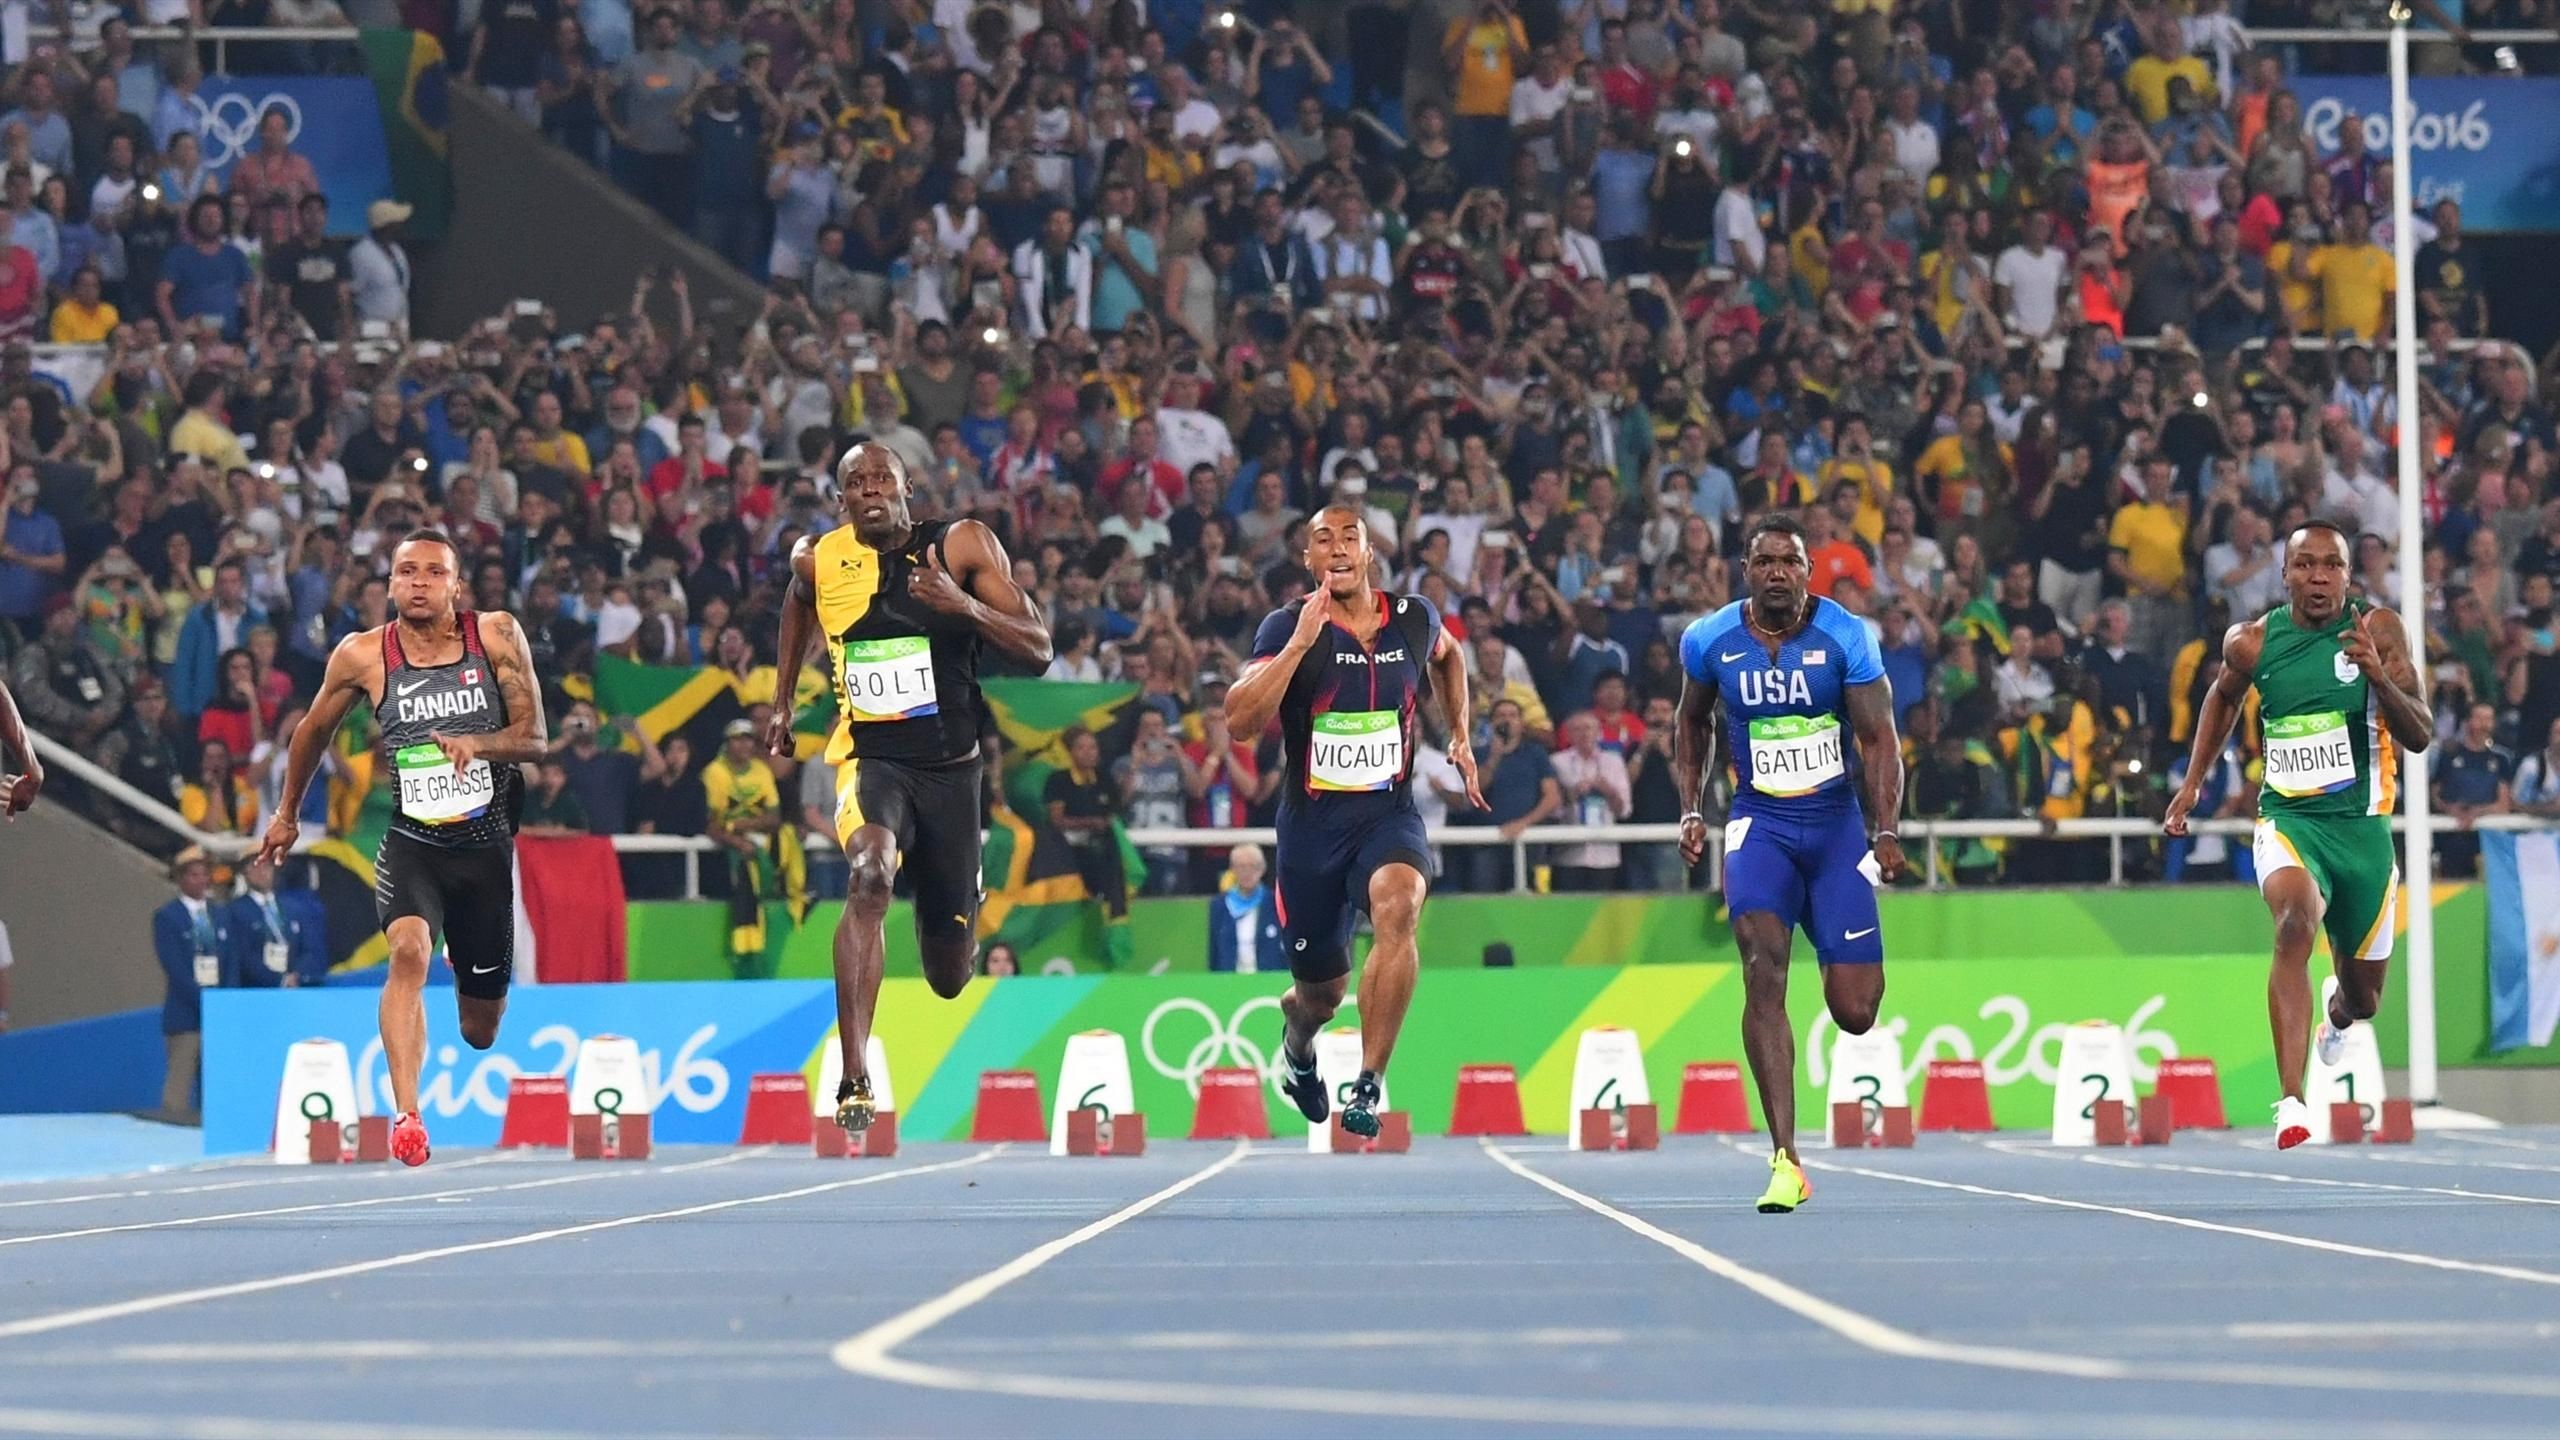 2560x1440 ... Bolt" fliegt auf den letzten 25 Metern an der Konkurrenz vorbei und  lÃ¤sst sie hinter sich, Ã¼berschreitet als Erster die ZiellinieAFPSeine  Kontrahenten ...